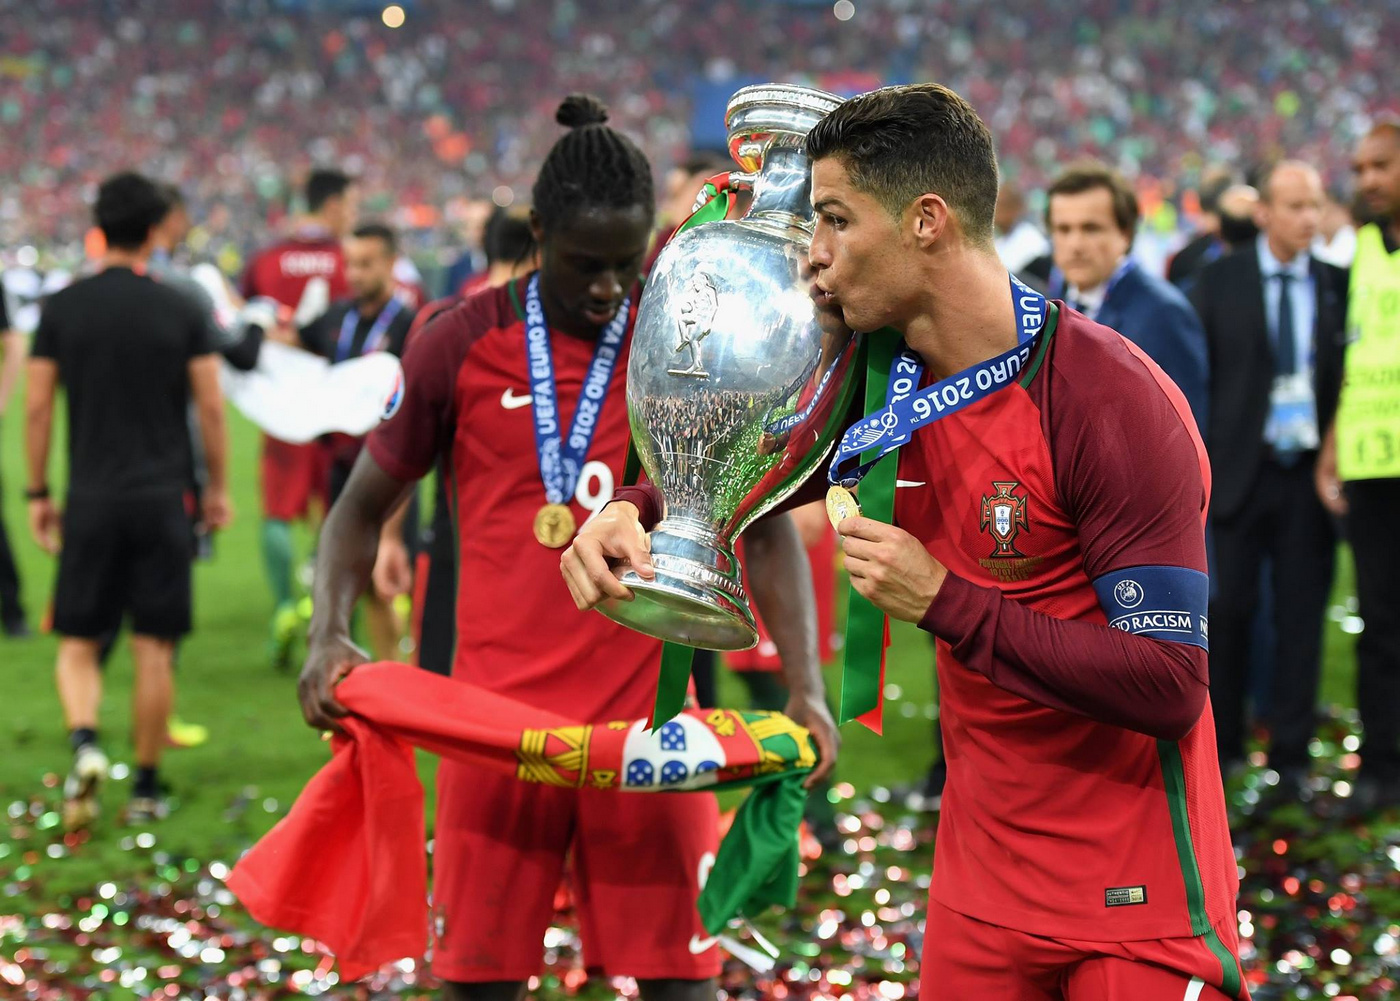 Euro 2016: Os méritos de um campeão improvável